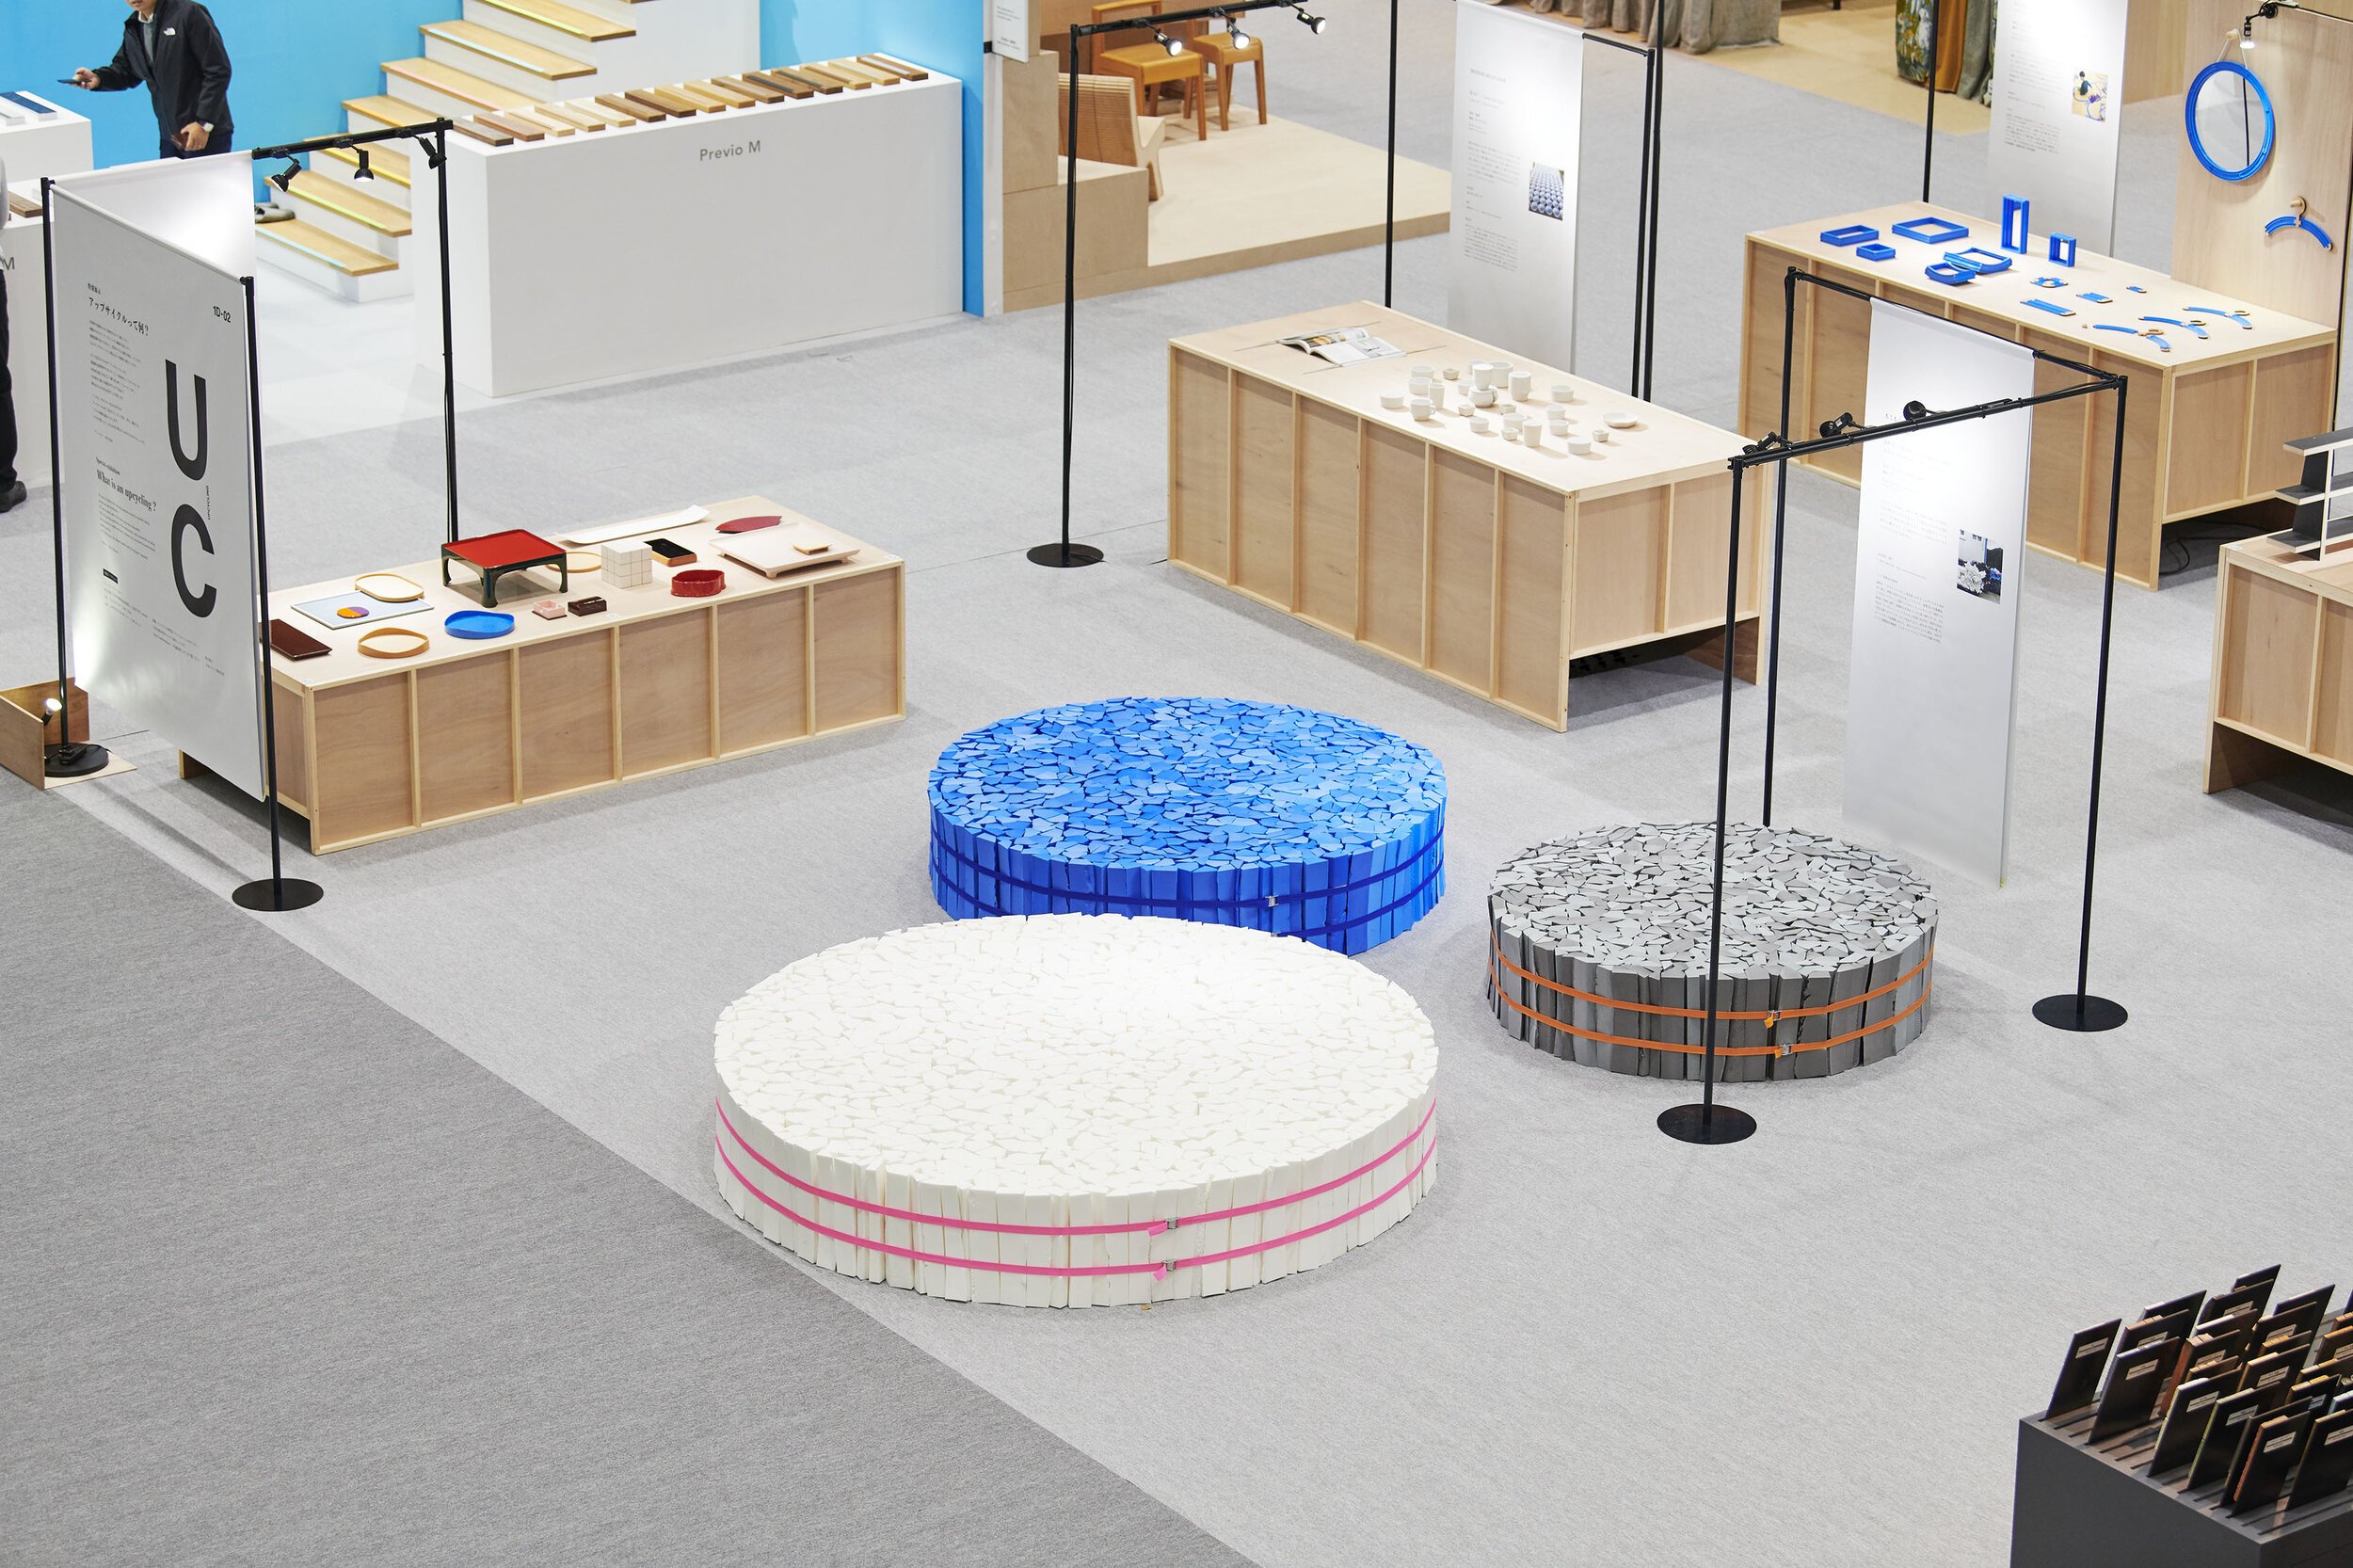  トラフ建築設計事務所 TORAFU ARCHITECTSの鈴野浩一と禿真哉がデザインした、端材をアップサイクルした「もこもこソファ」。展示会場での様子 